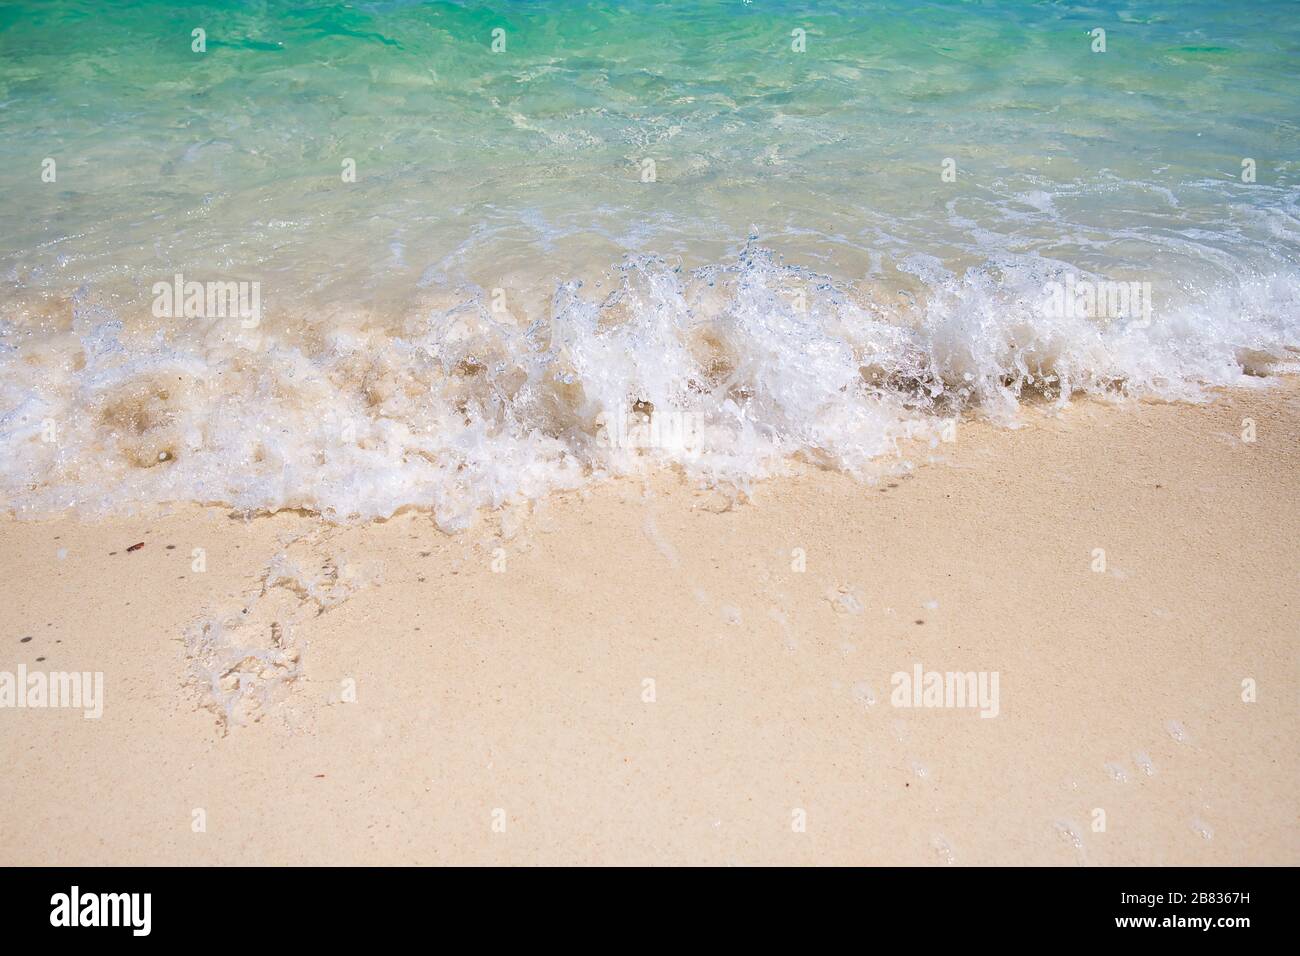 Sanftes blaues Meer am sauberen Sandstrand. Die blaue Meeresweiche Welle auf dem Sand berührt kontinuierlich und schön das Ufer Stockfoto